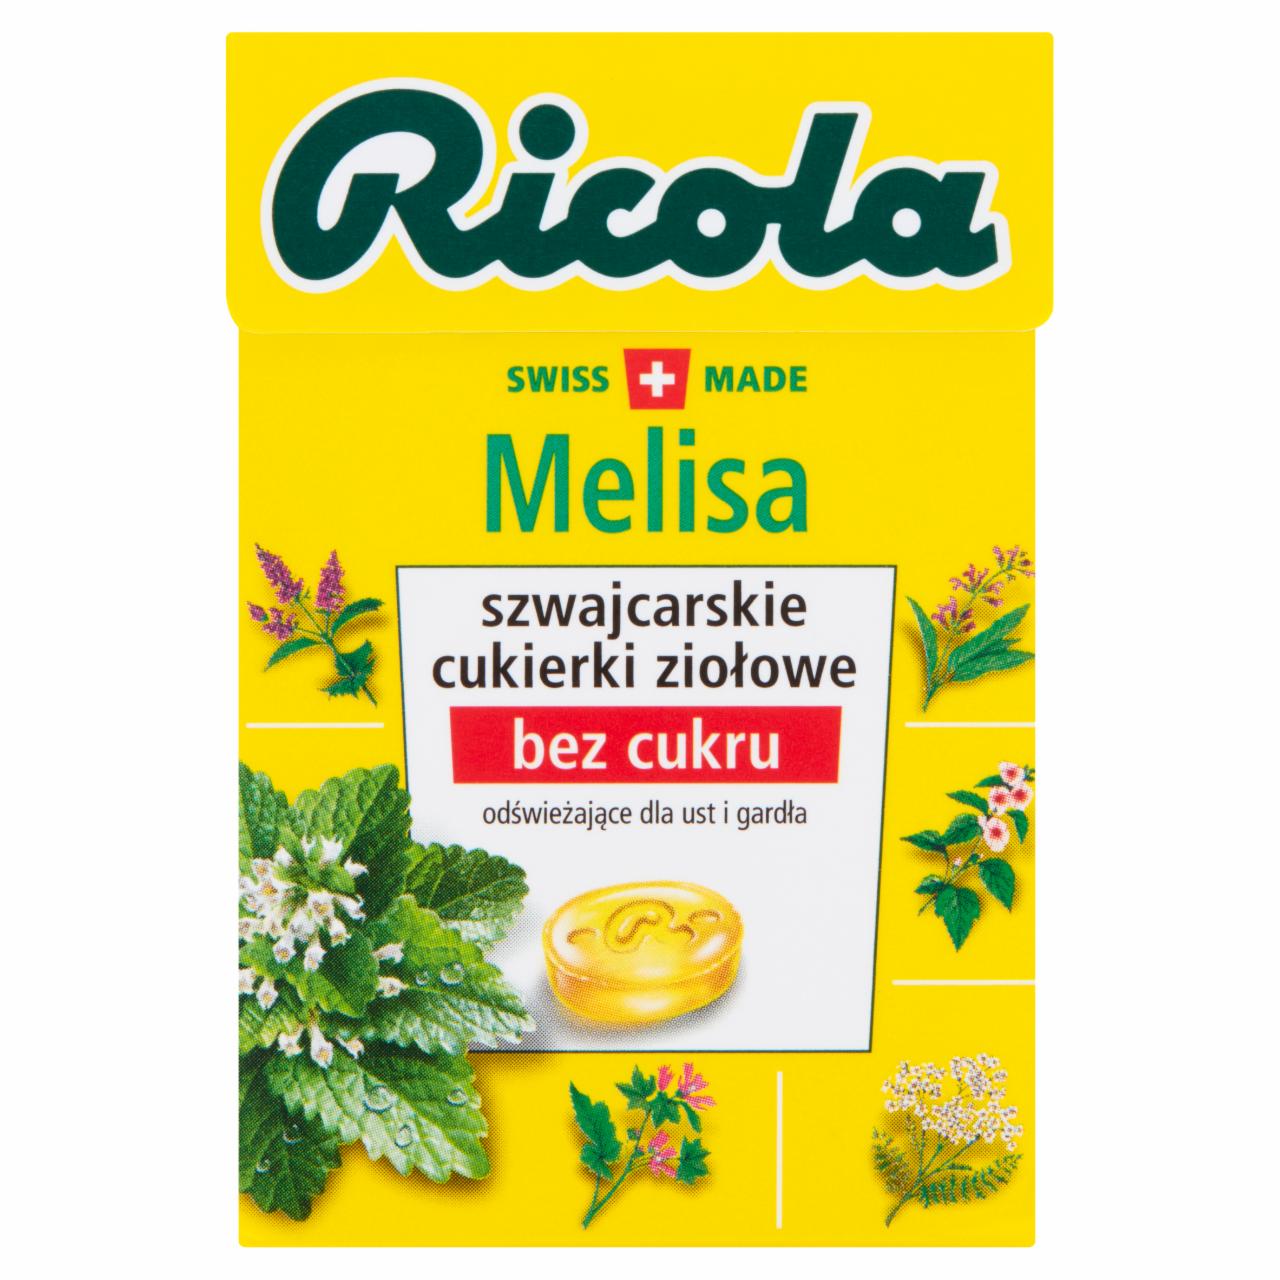 Zdjęcia - Ricola Szwajcarskie cukierki ziołowe melisa 27,5 g